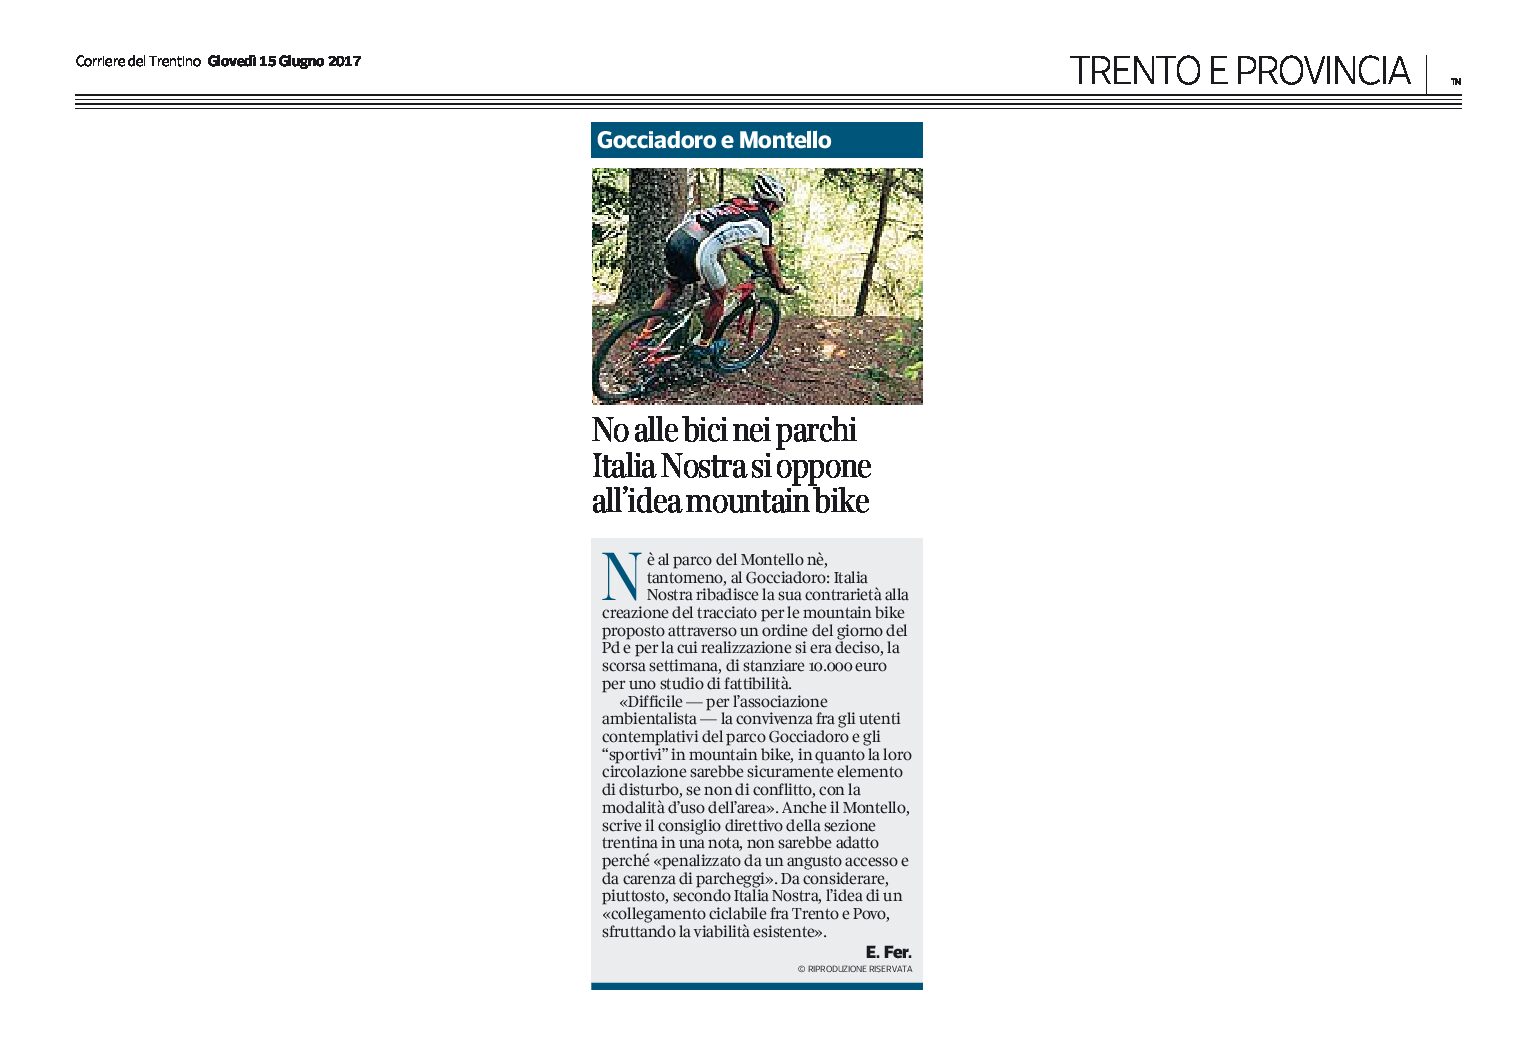 Trento, parchi di Gocciadoro e Montello: Italia Nostra si oppone alla realizzazione del tracciato per mountain bike